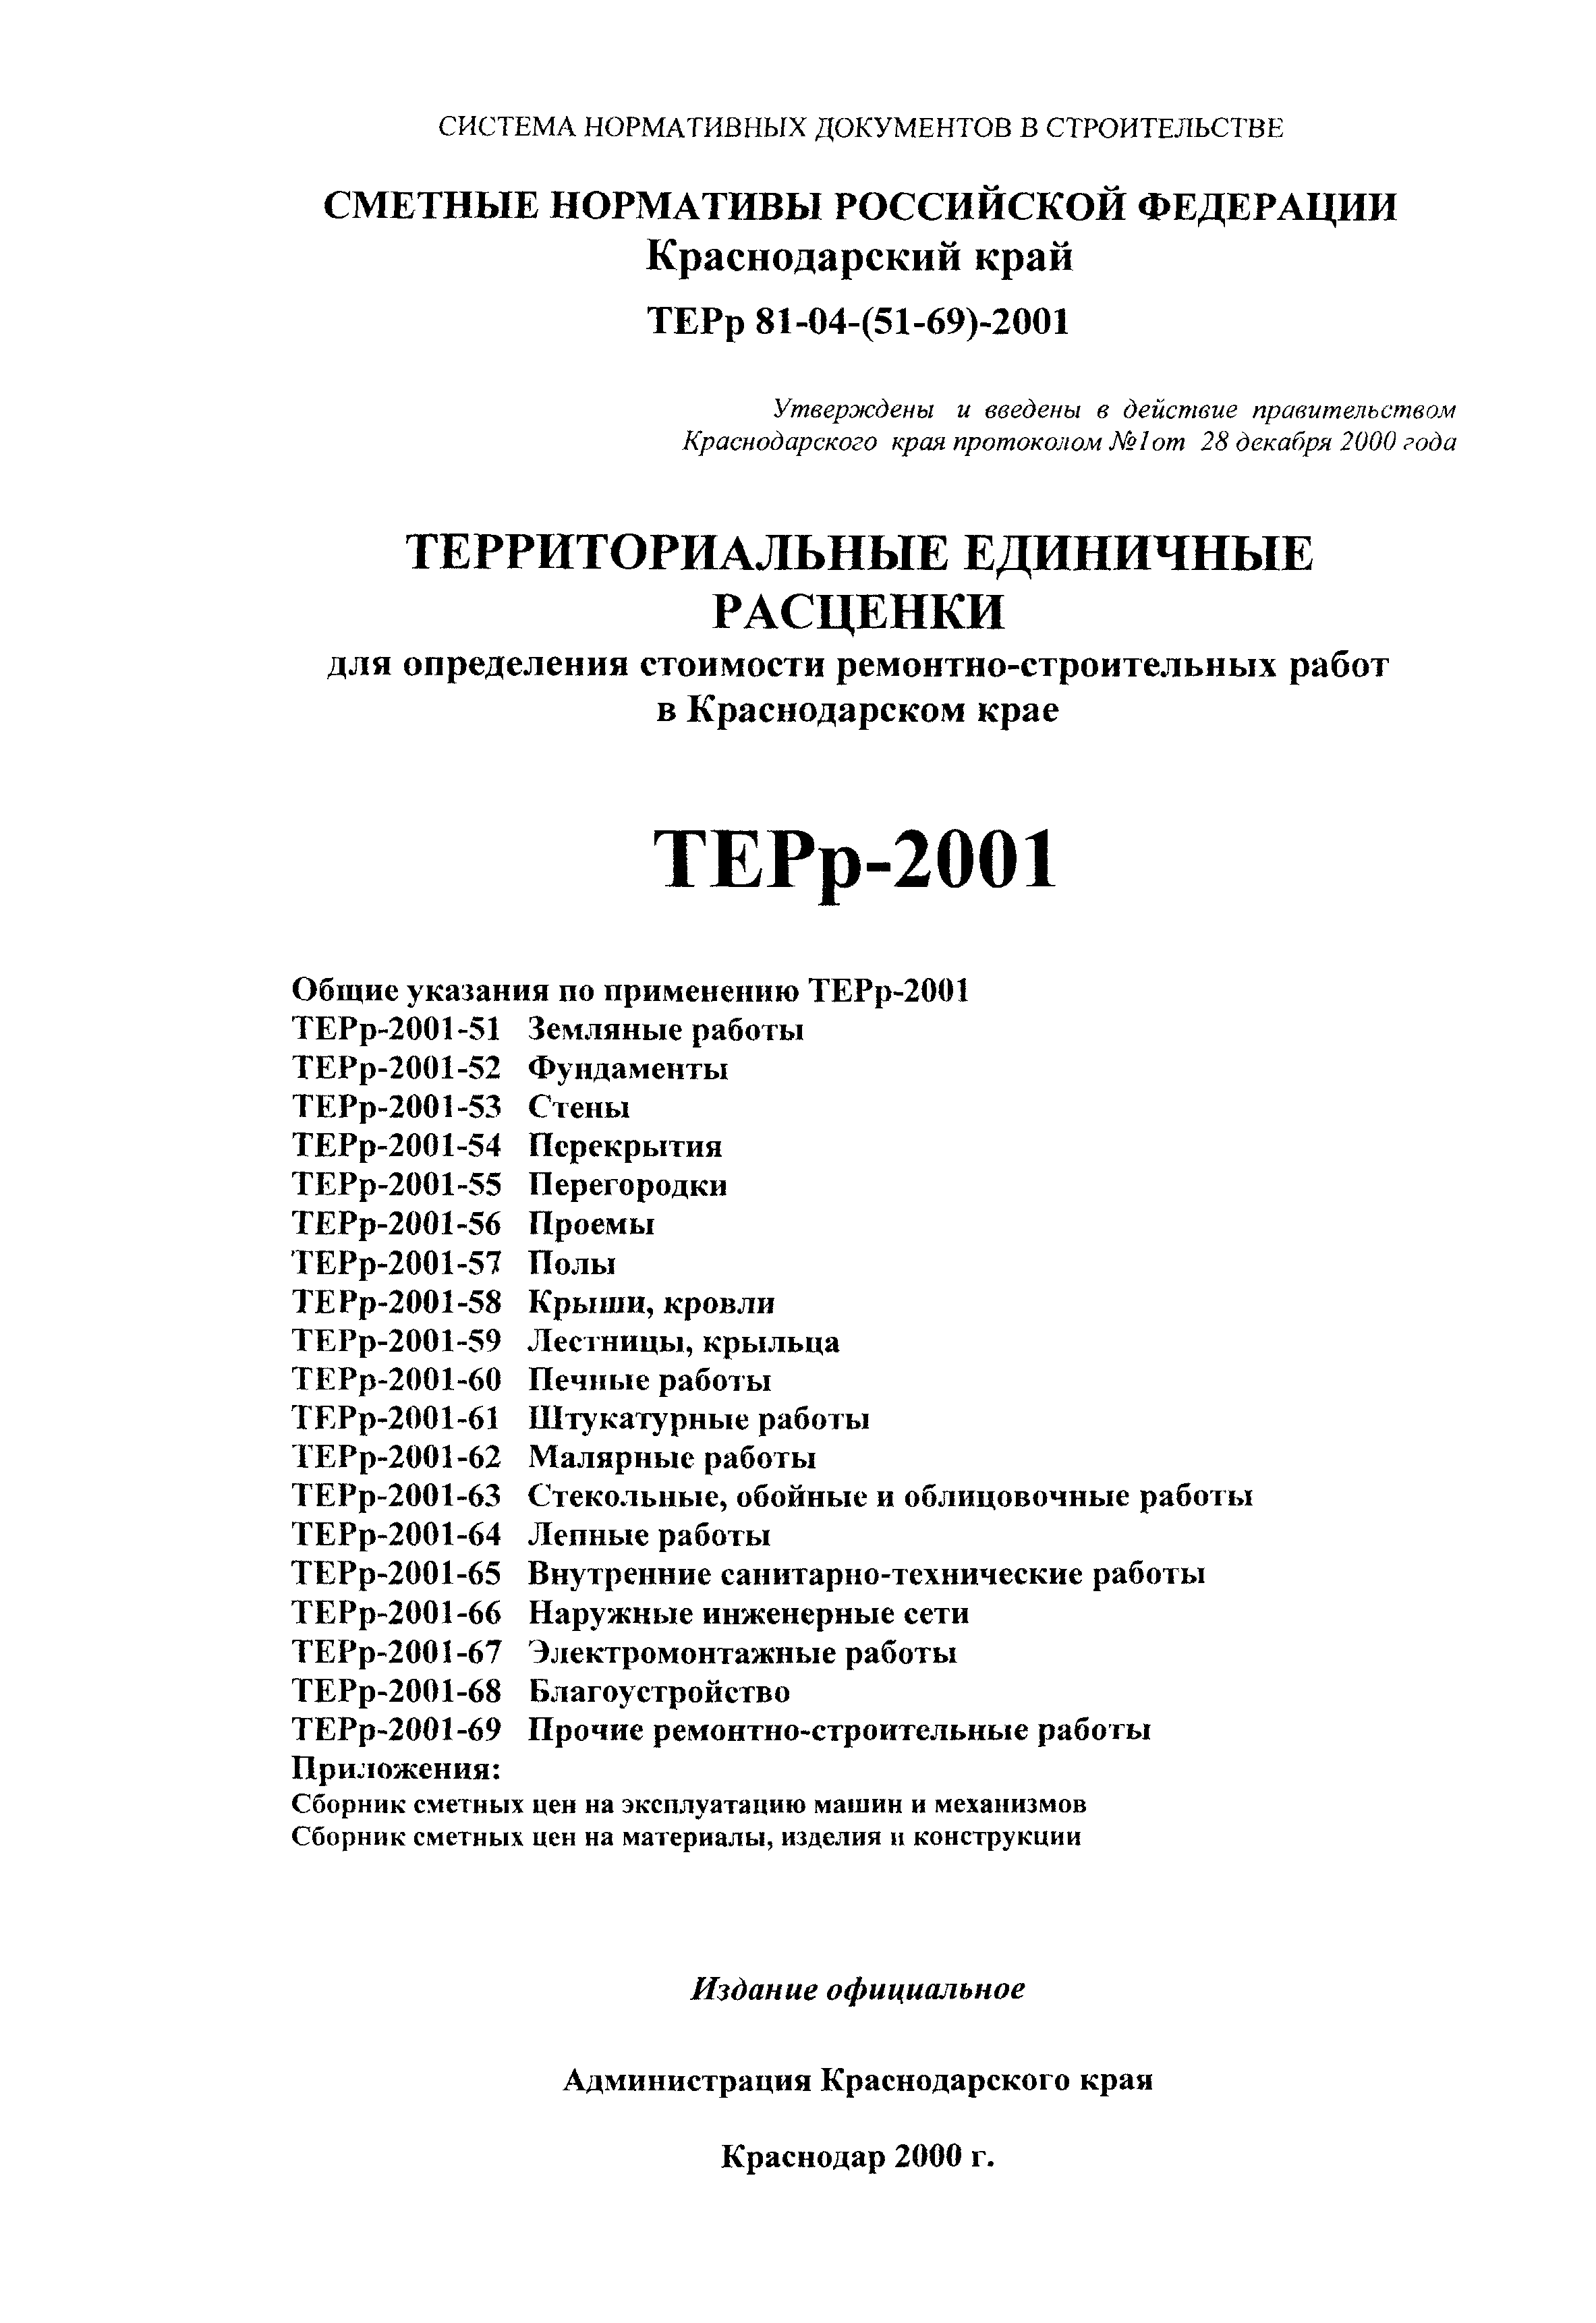 ТЕРр Краснодарского края 2001-67